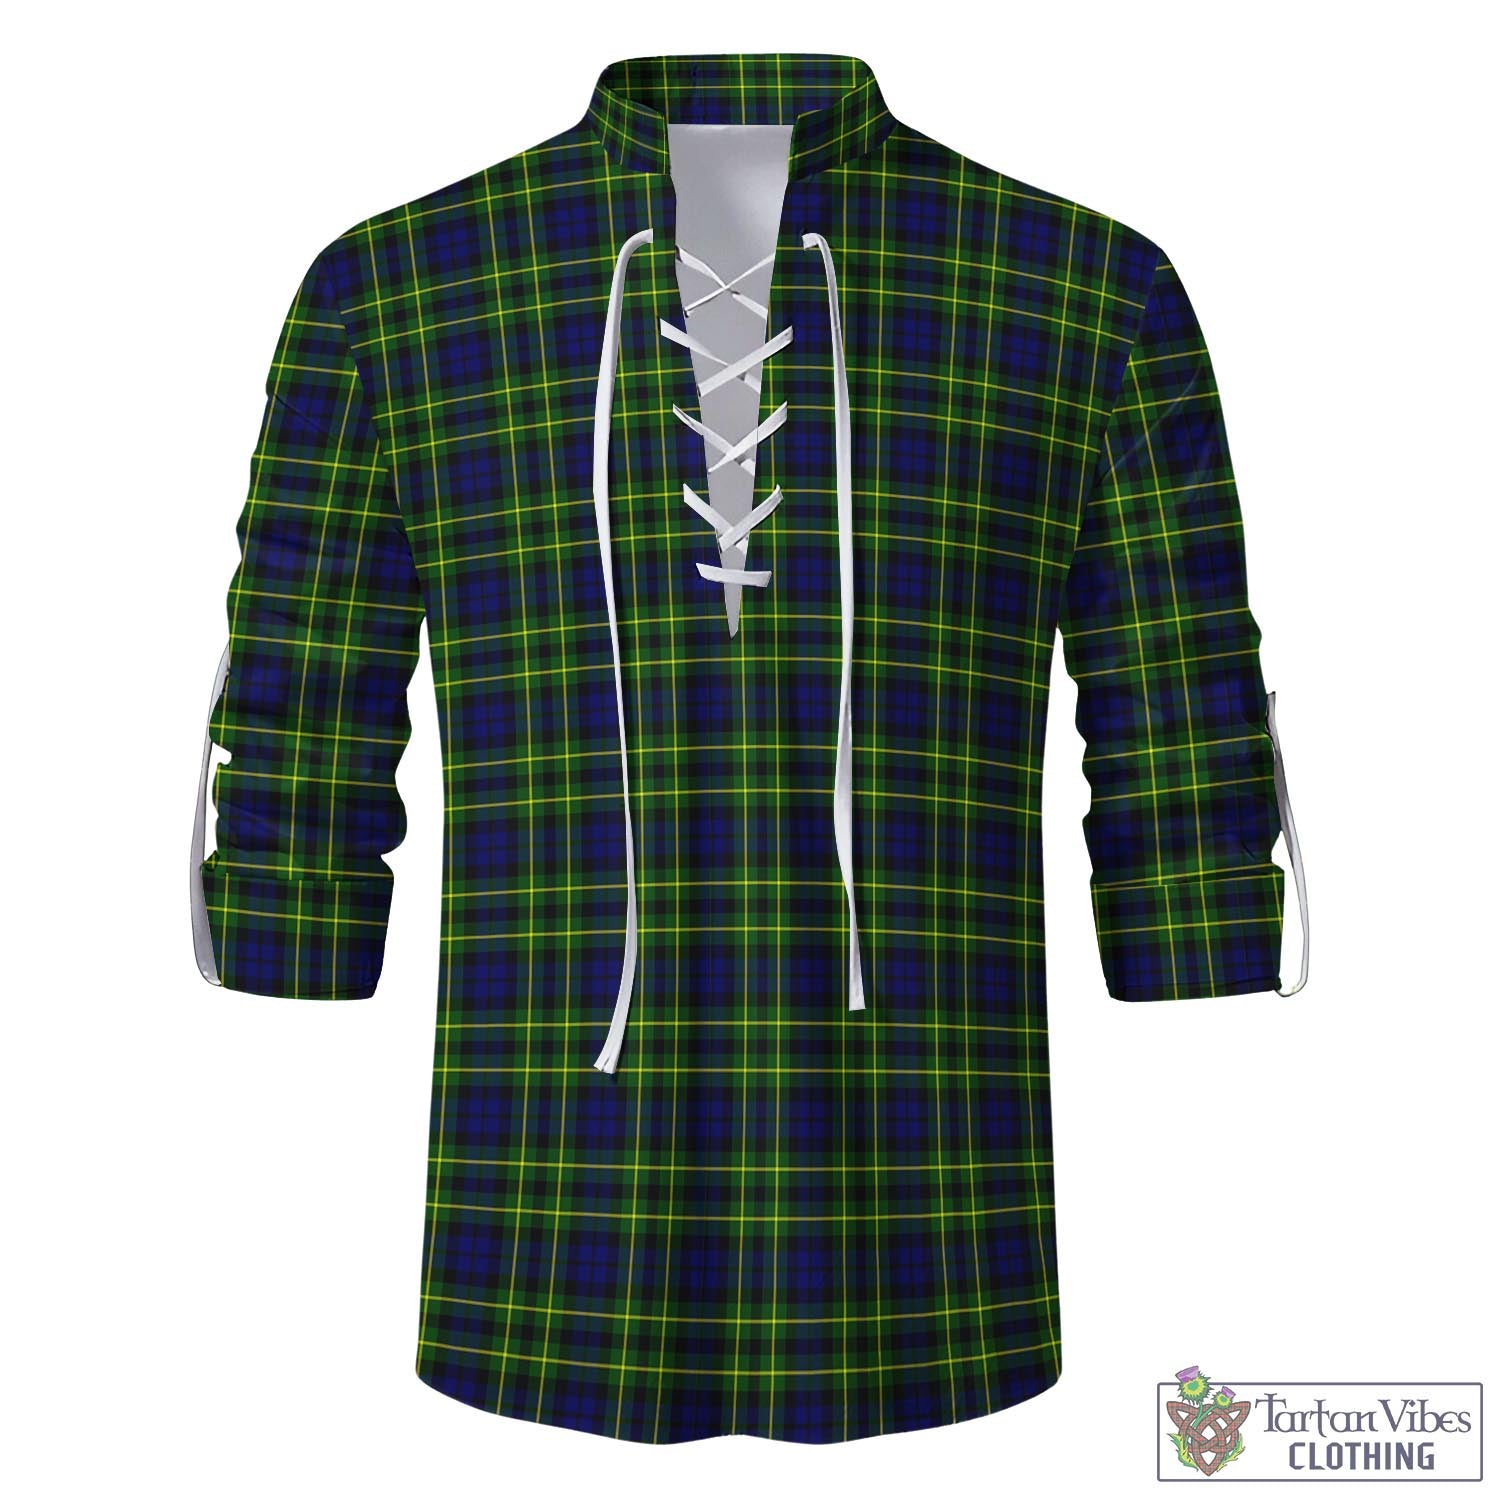 Tartan Vibes Clothing Campbell of Breadalbane Modern Tartan Men's Scottish Traditional Jacobite Ghillie Kilt Shirt